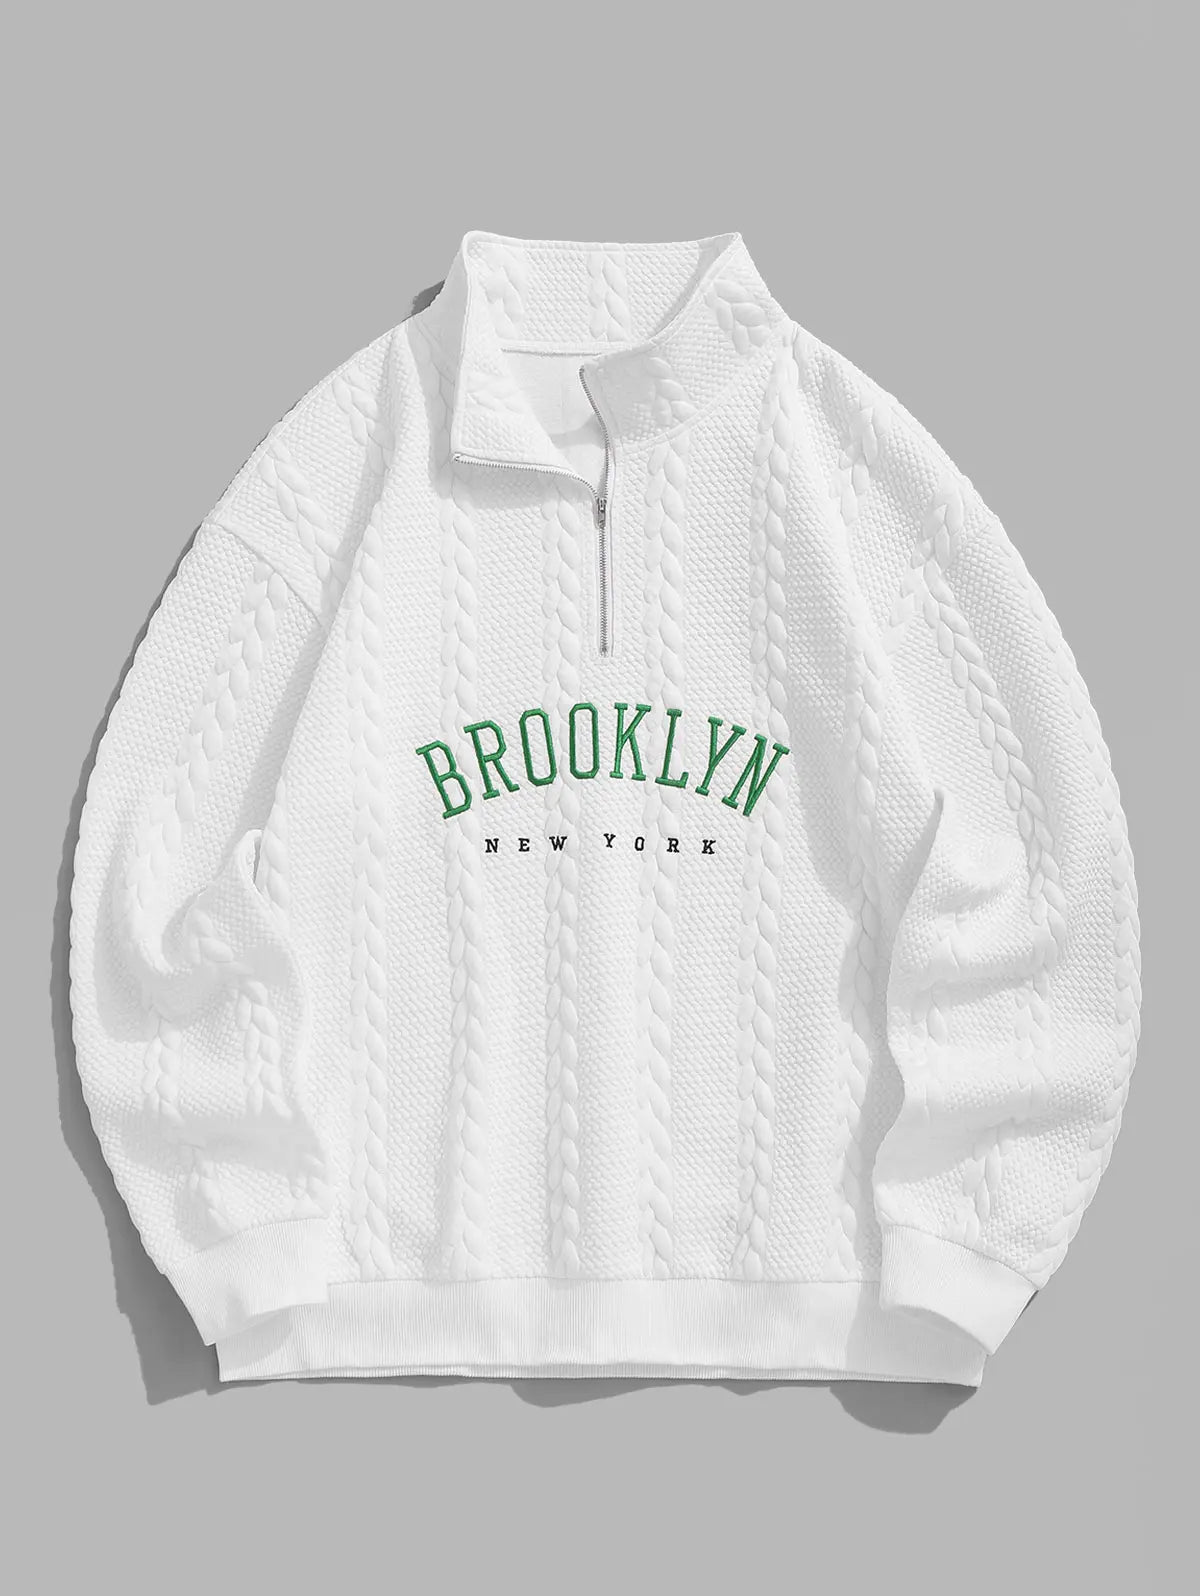 VICENZO | BrookLyn - New York Pure White